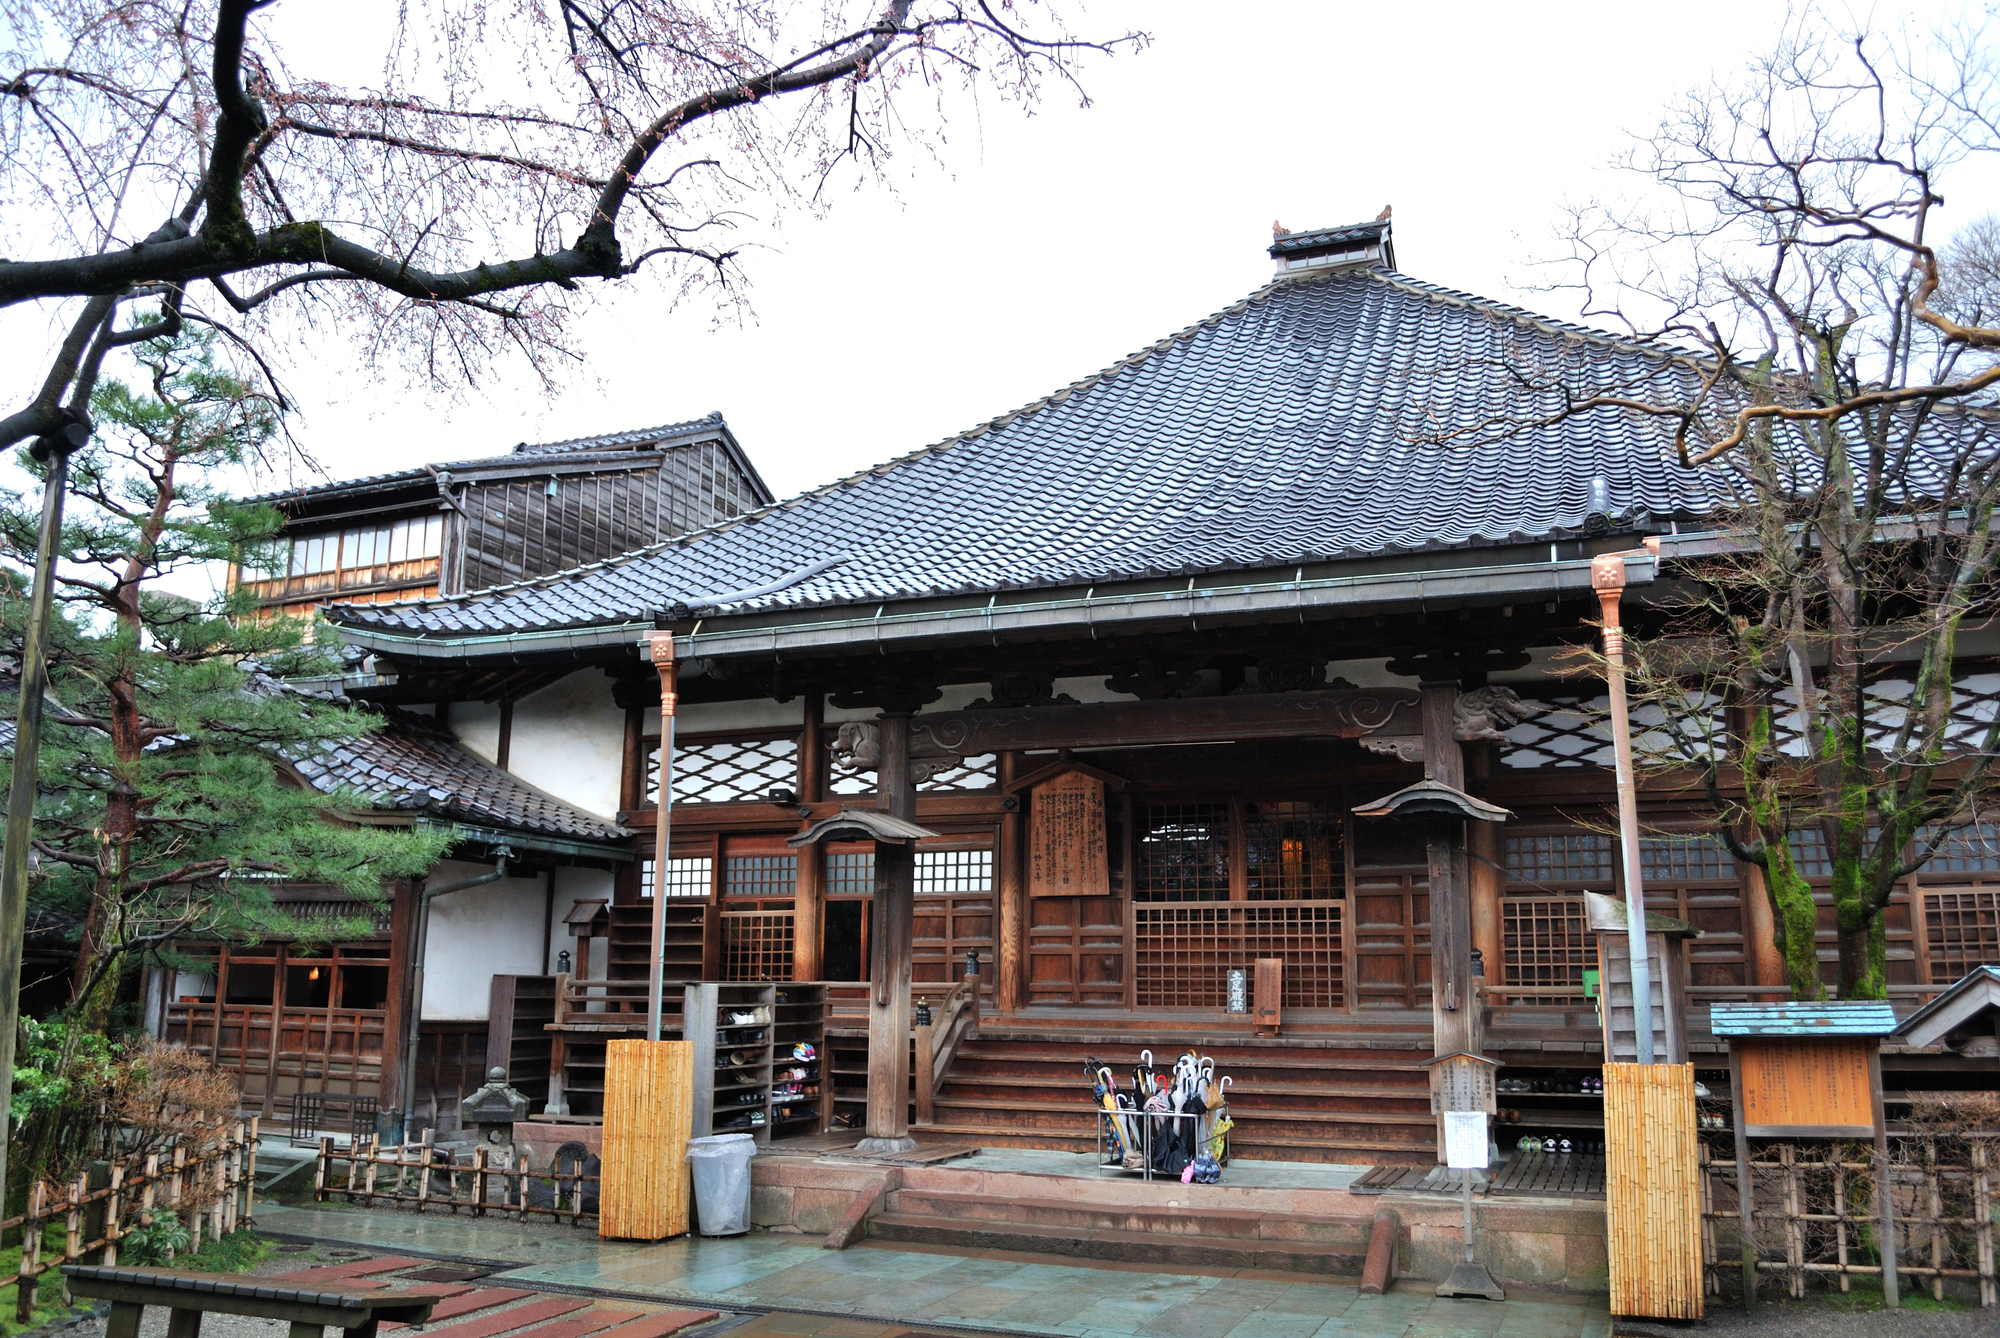 Meditate like a Ninja: Myoryuji Ninja Temple